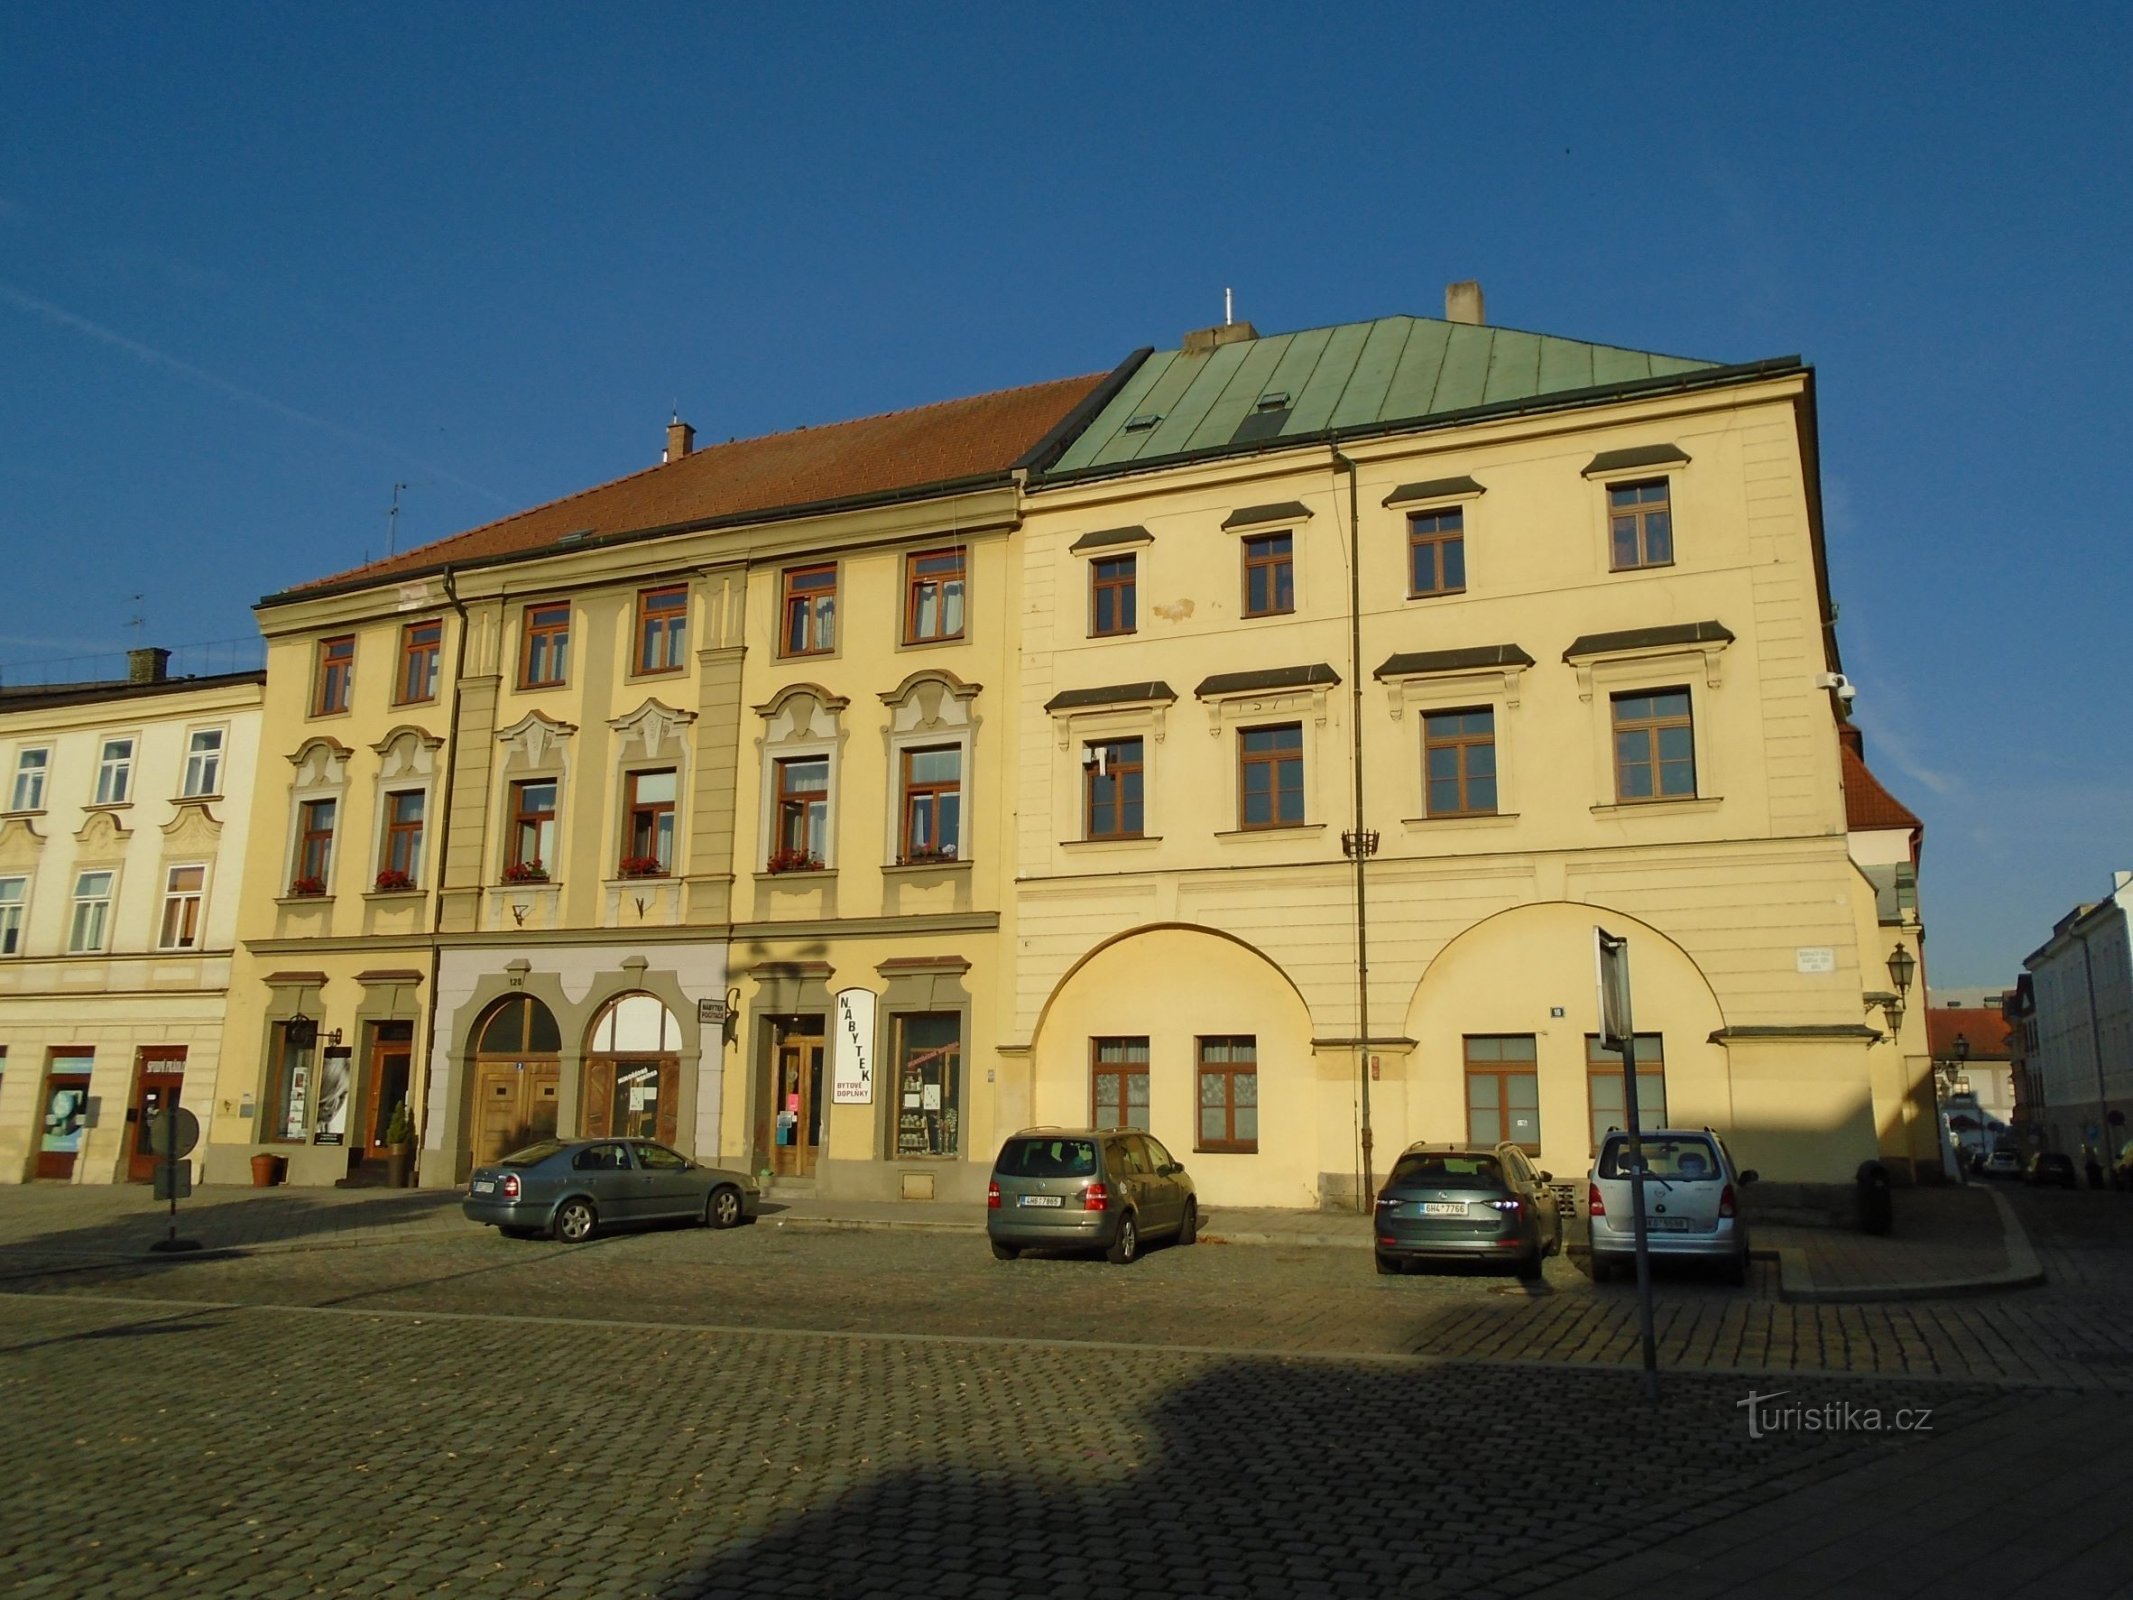 Malé náměstí n. 128 e Dlouhá n. 127 (Hradec Králové, 5.7.2018 luglio XNUMX)